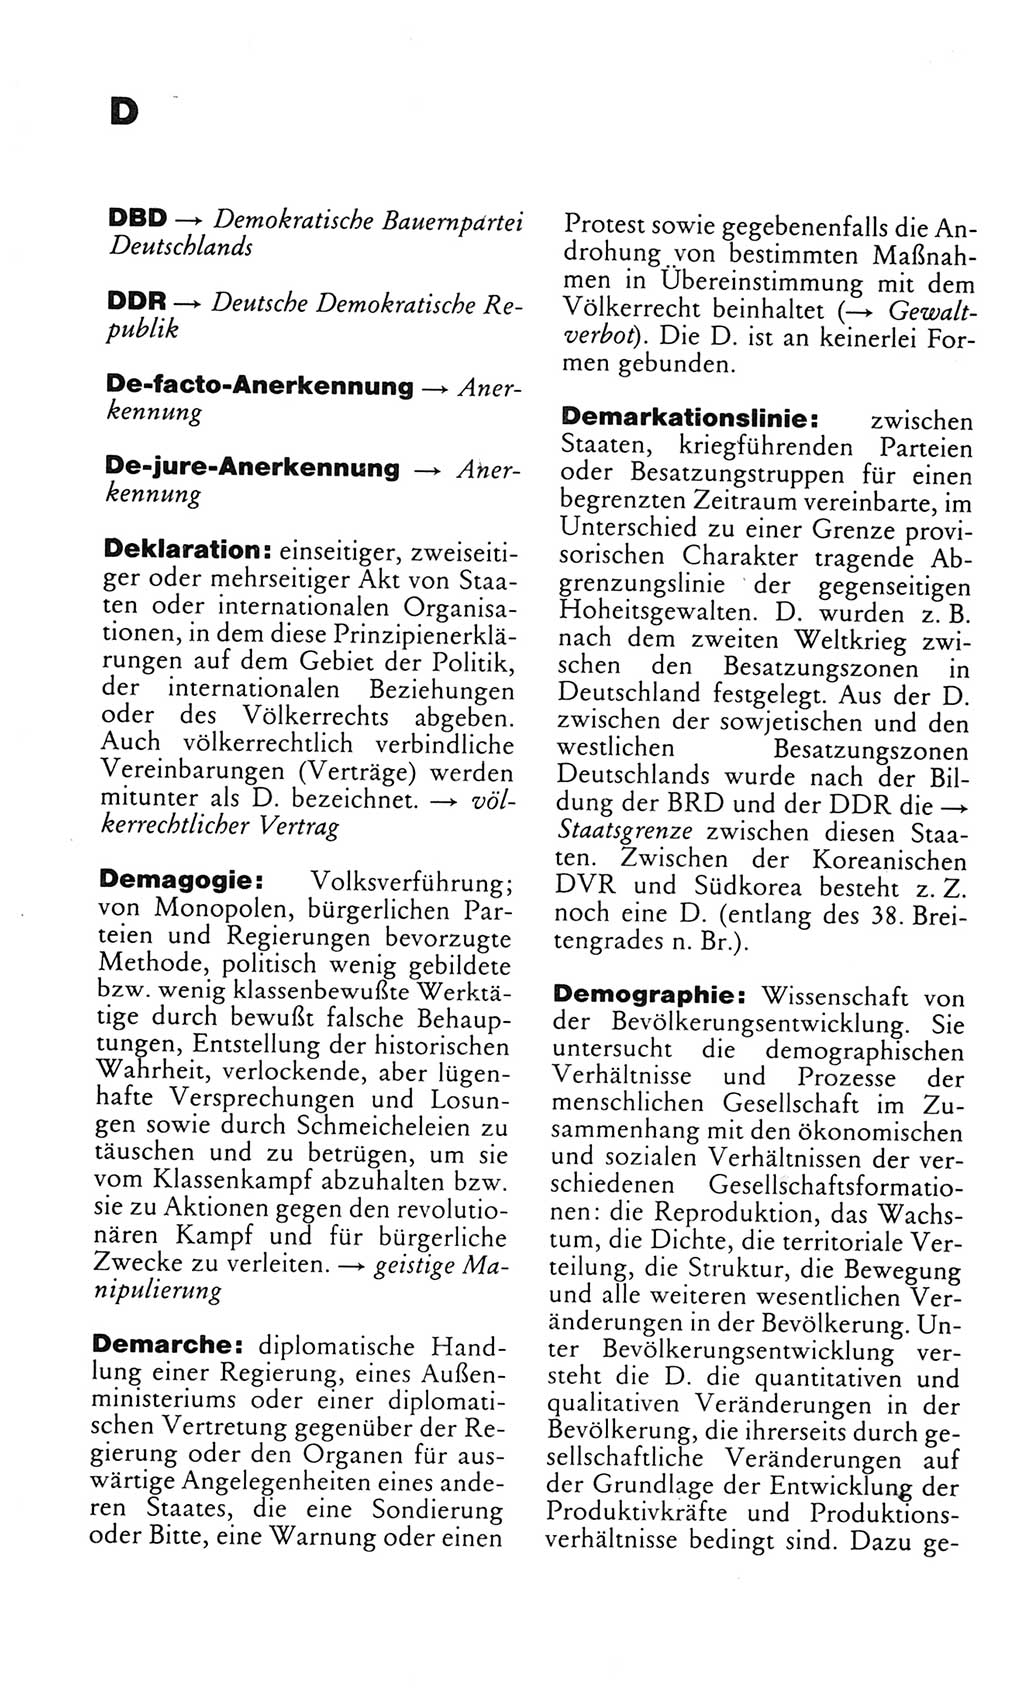 Kleines politisches Wörterbuch [Deutsche Demokratische Republik (DDR)] 1983, Seite 164 (Kl. pol. Wb. DDR 1983, S. 164)